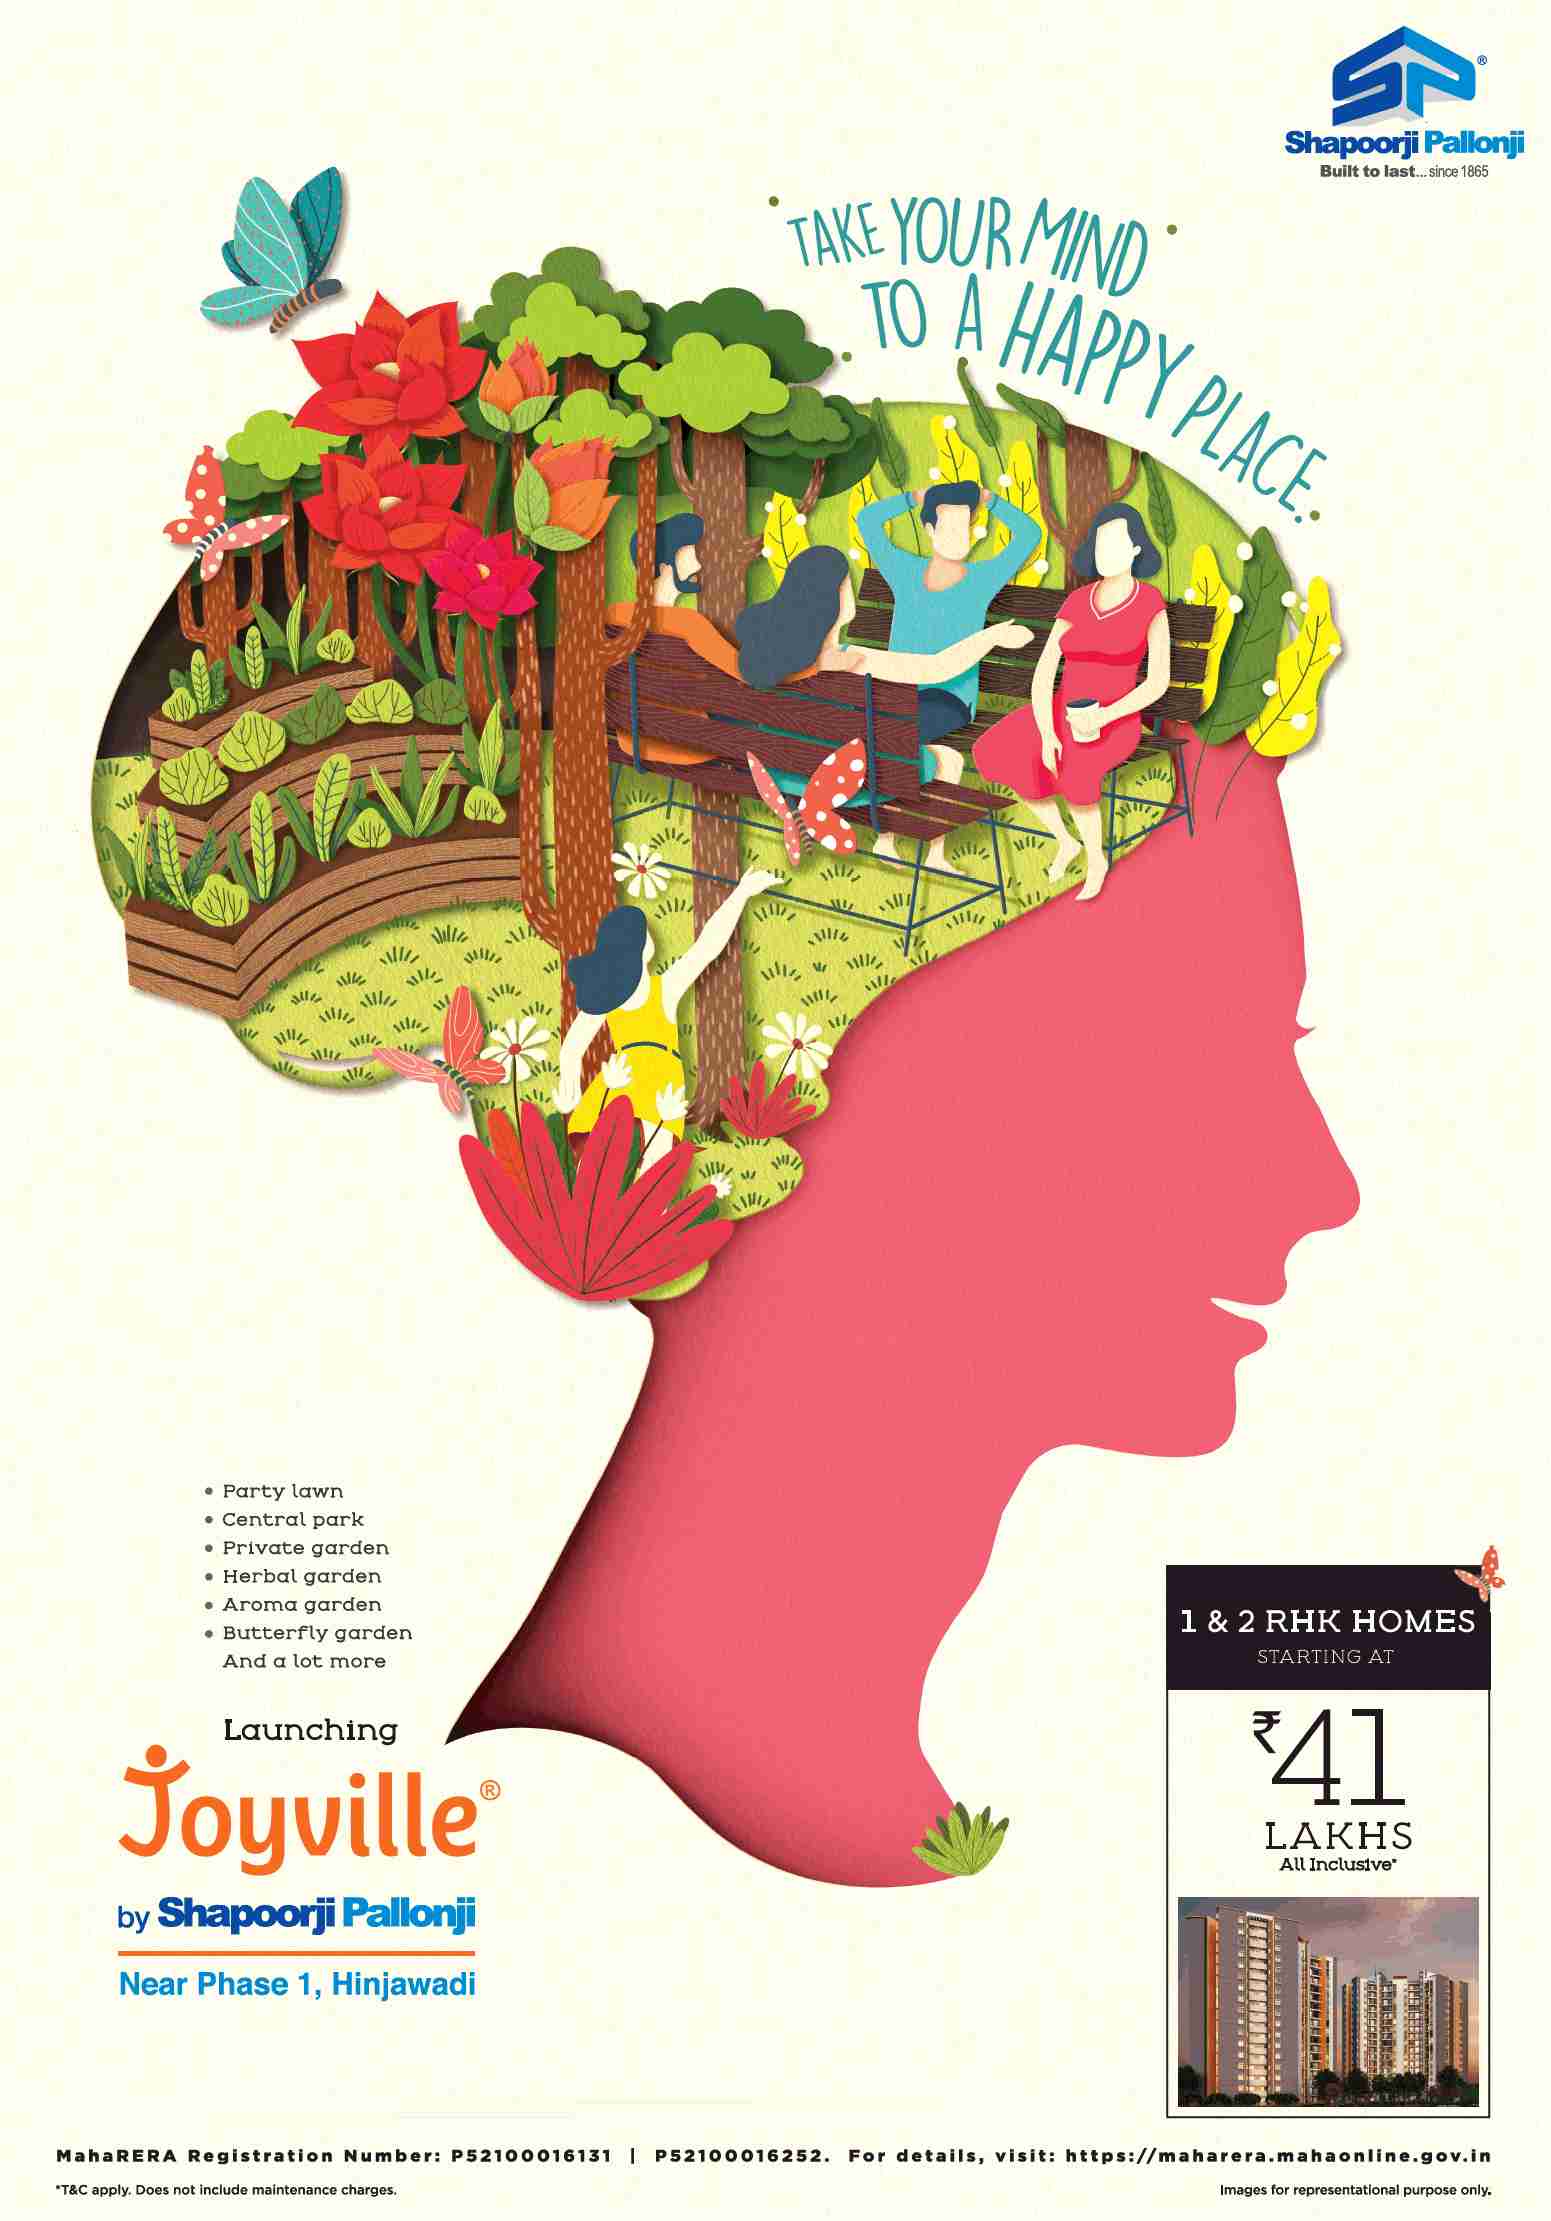 Launching Joyville by Shapoorji Pallonji at Hinjawadi in Mumbai